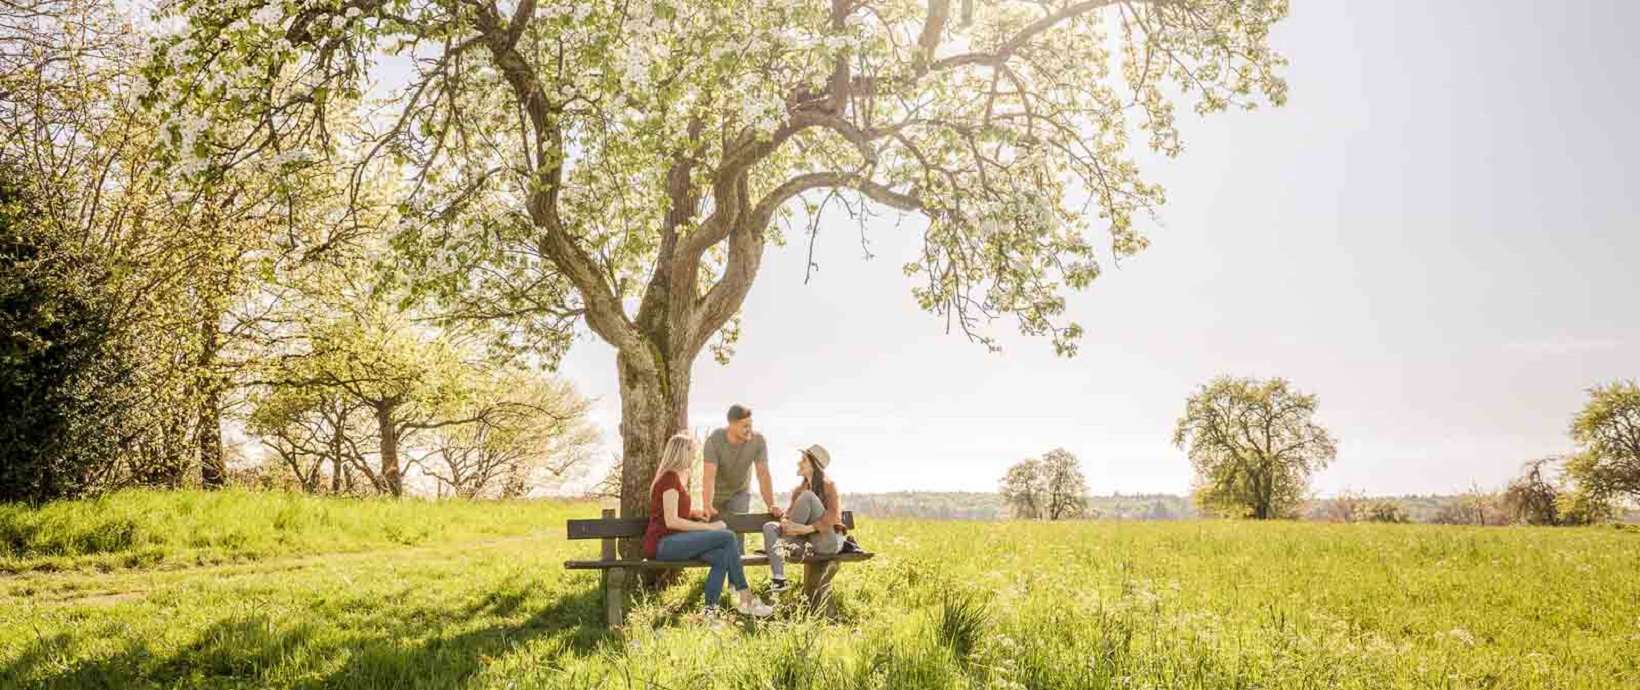 Drei Personen sitzen auf einer Bank im Grünen unter einem blühenden Obstbaum